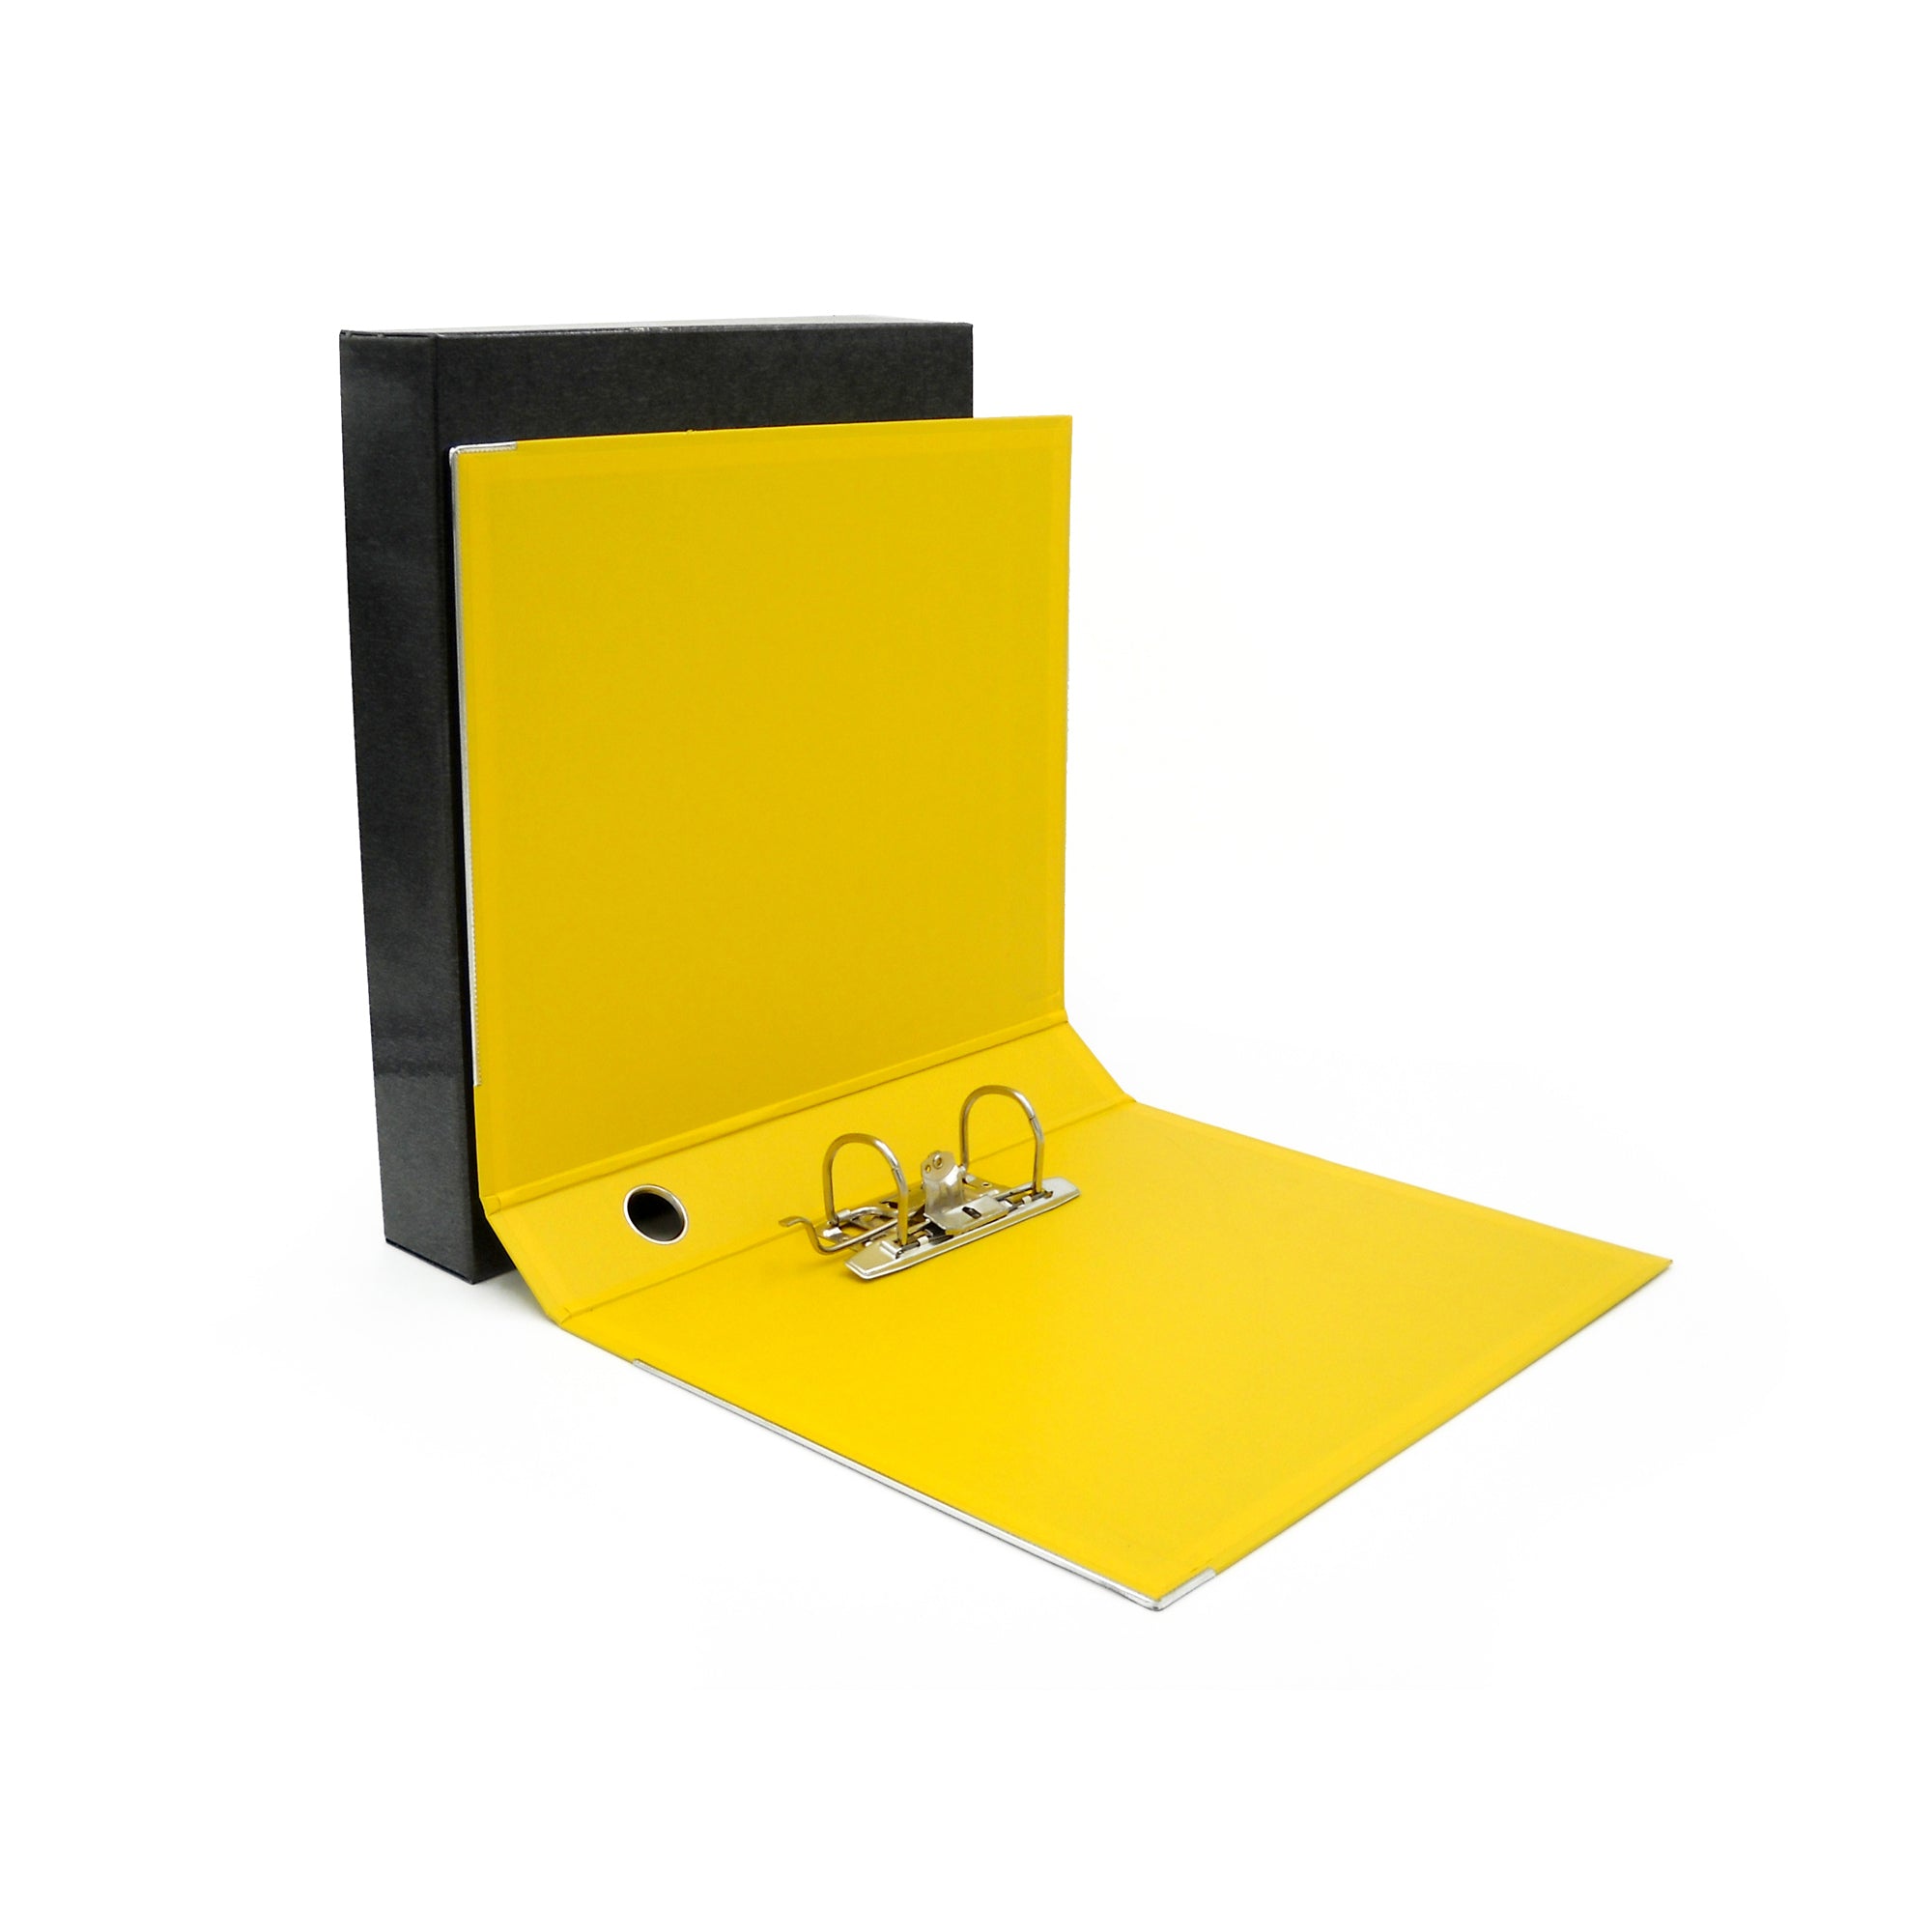 starline-registratore-kingbox-f-to-protocollo-dorso-5cm-giallo